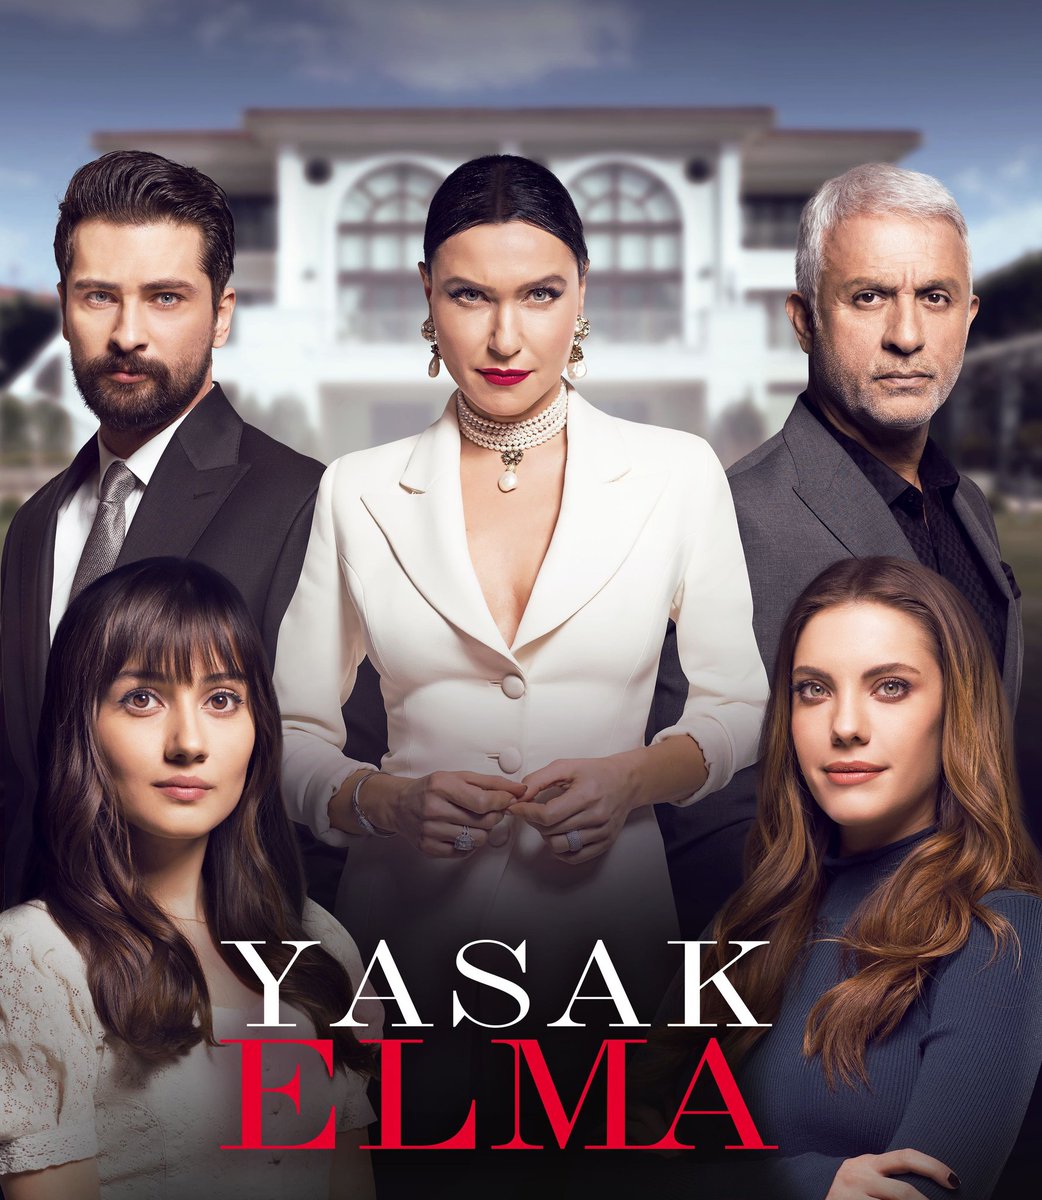 📢: @telefe ya promociona su próxima apuesta turca #YasakElma bajo el título #PasionProhibida ¡Muy pronto! 🍎